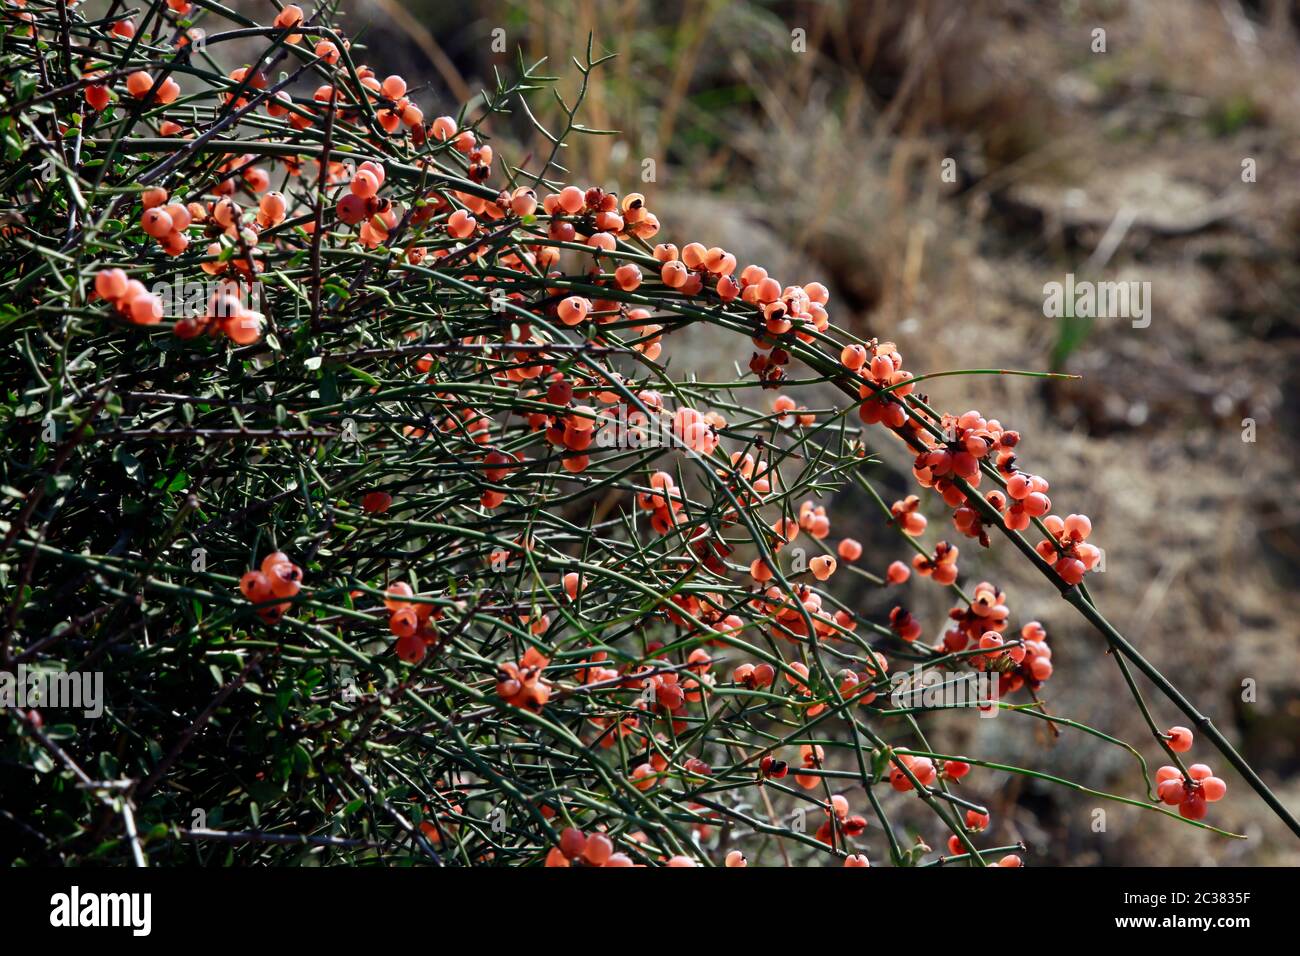 Meerträubel (Ephedra foeminea) mit roten, reifen Früchten, Bafra, Türkische  Republik Nordzypern Stock Photo - Alamy